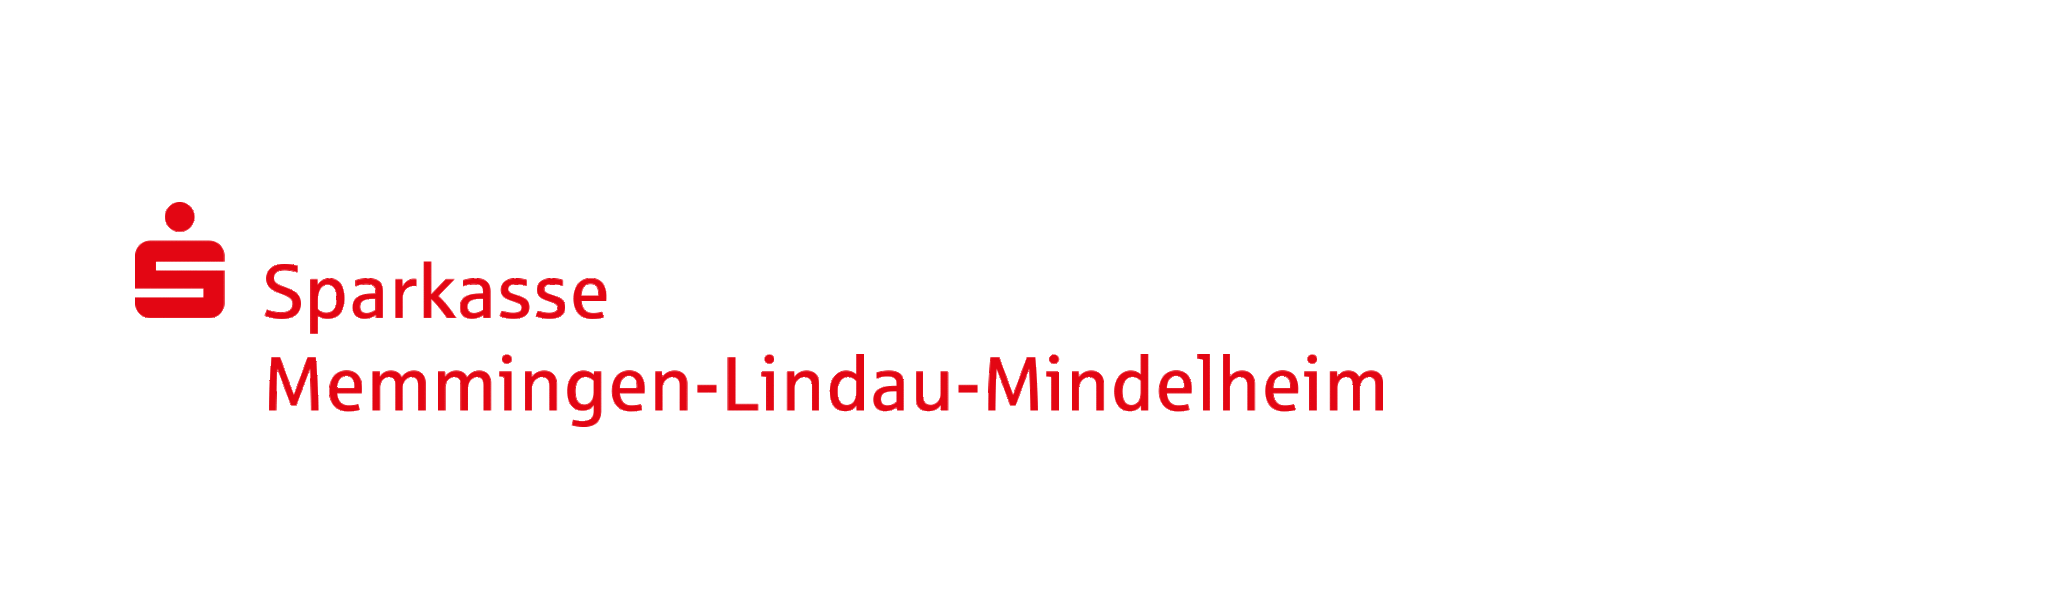 sparkasse-mindelheim-memmingen-lindau